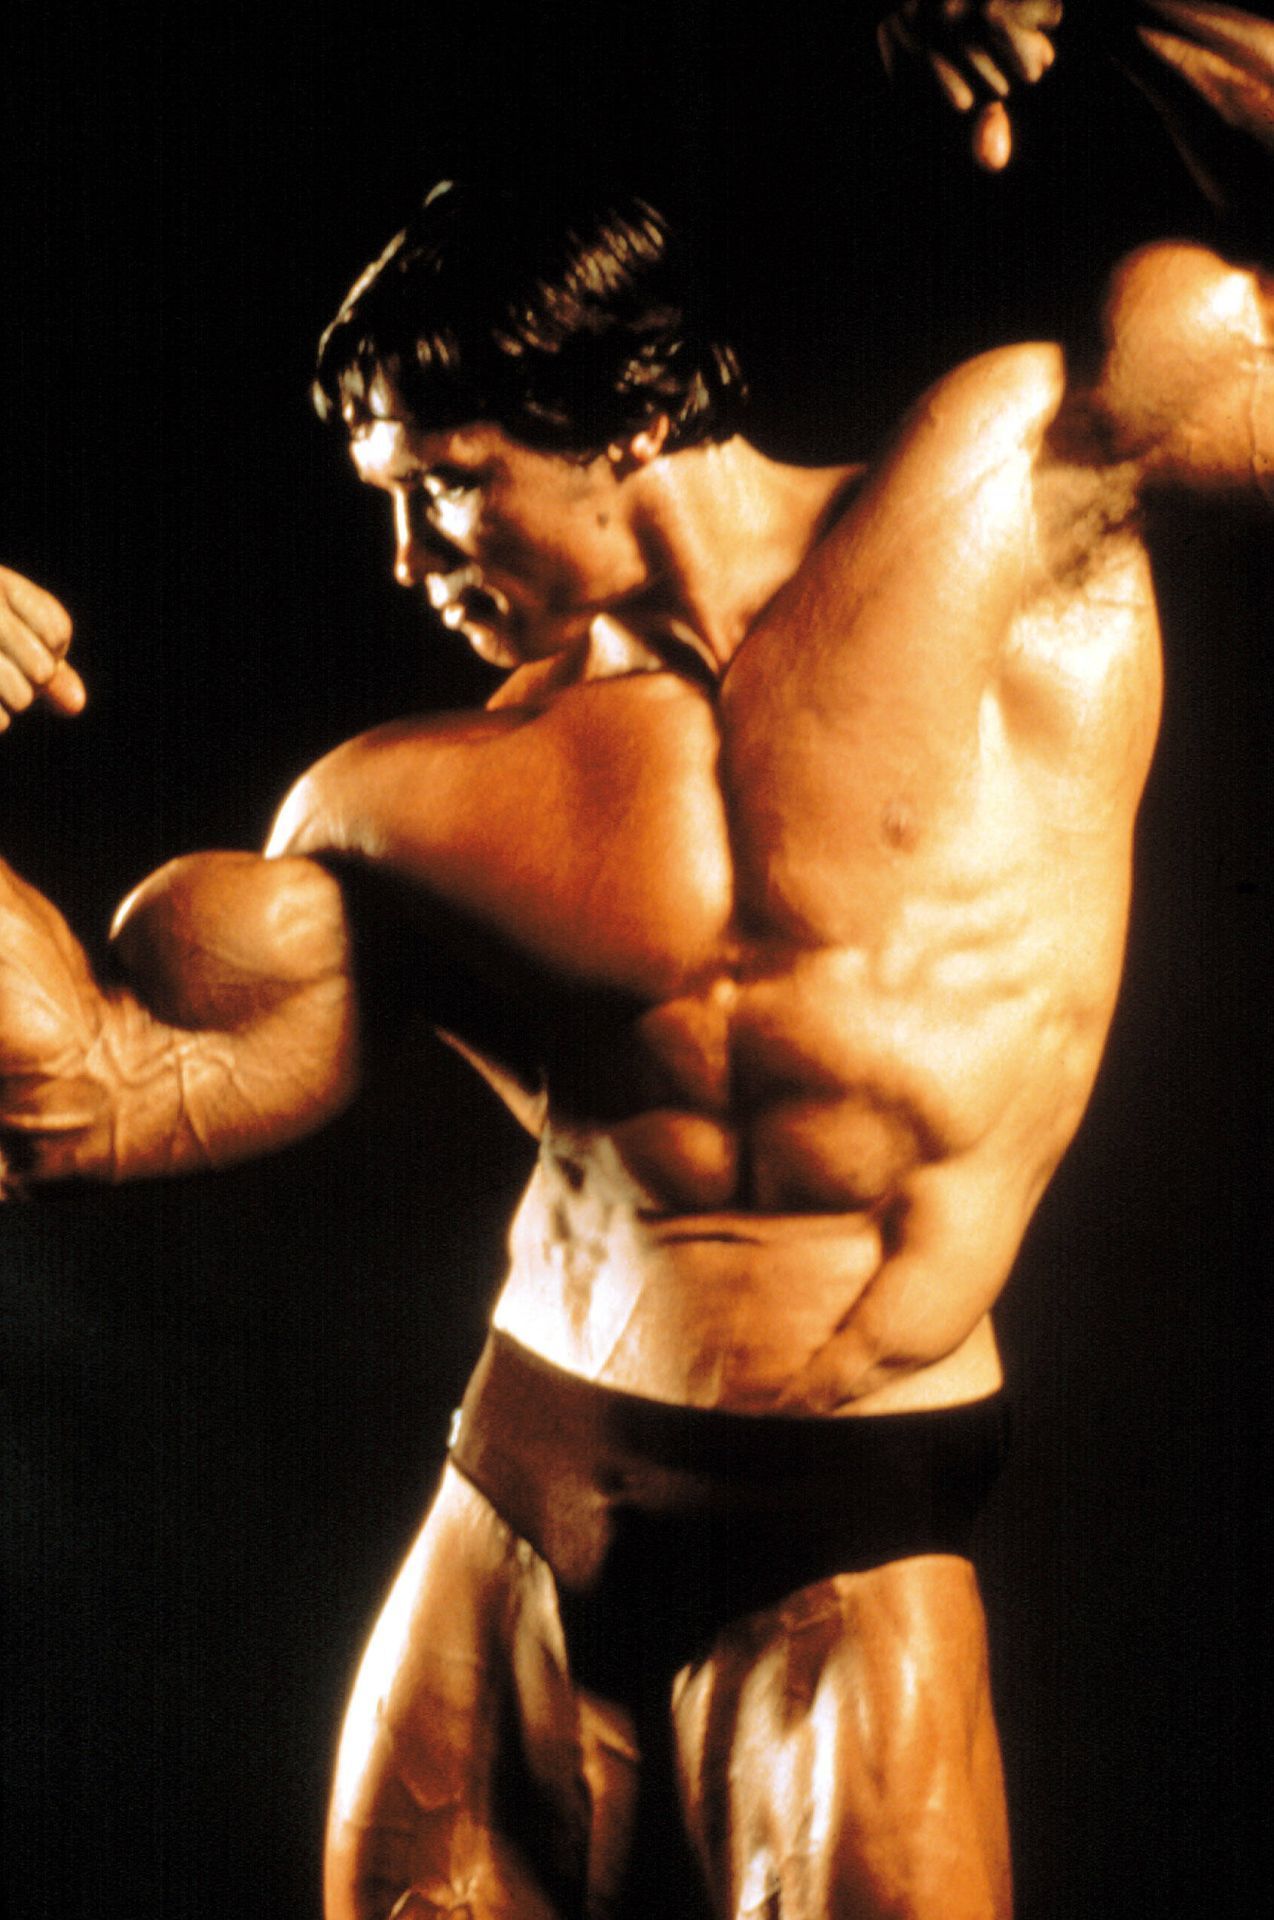 Siehst du die Ähnlichkeit? Klar, der definierte Körper. So sah Arnold Schwarzenegger zu seinen Bodybuilder-Zeiten aus.